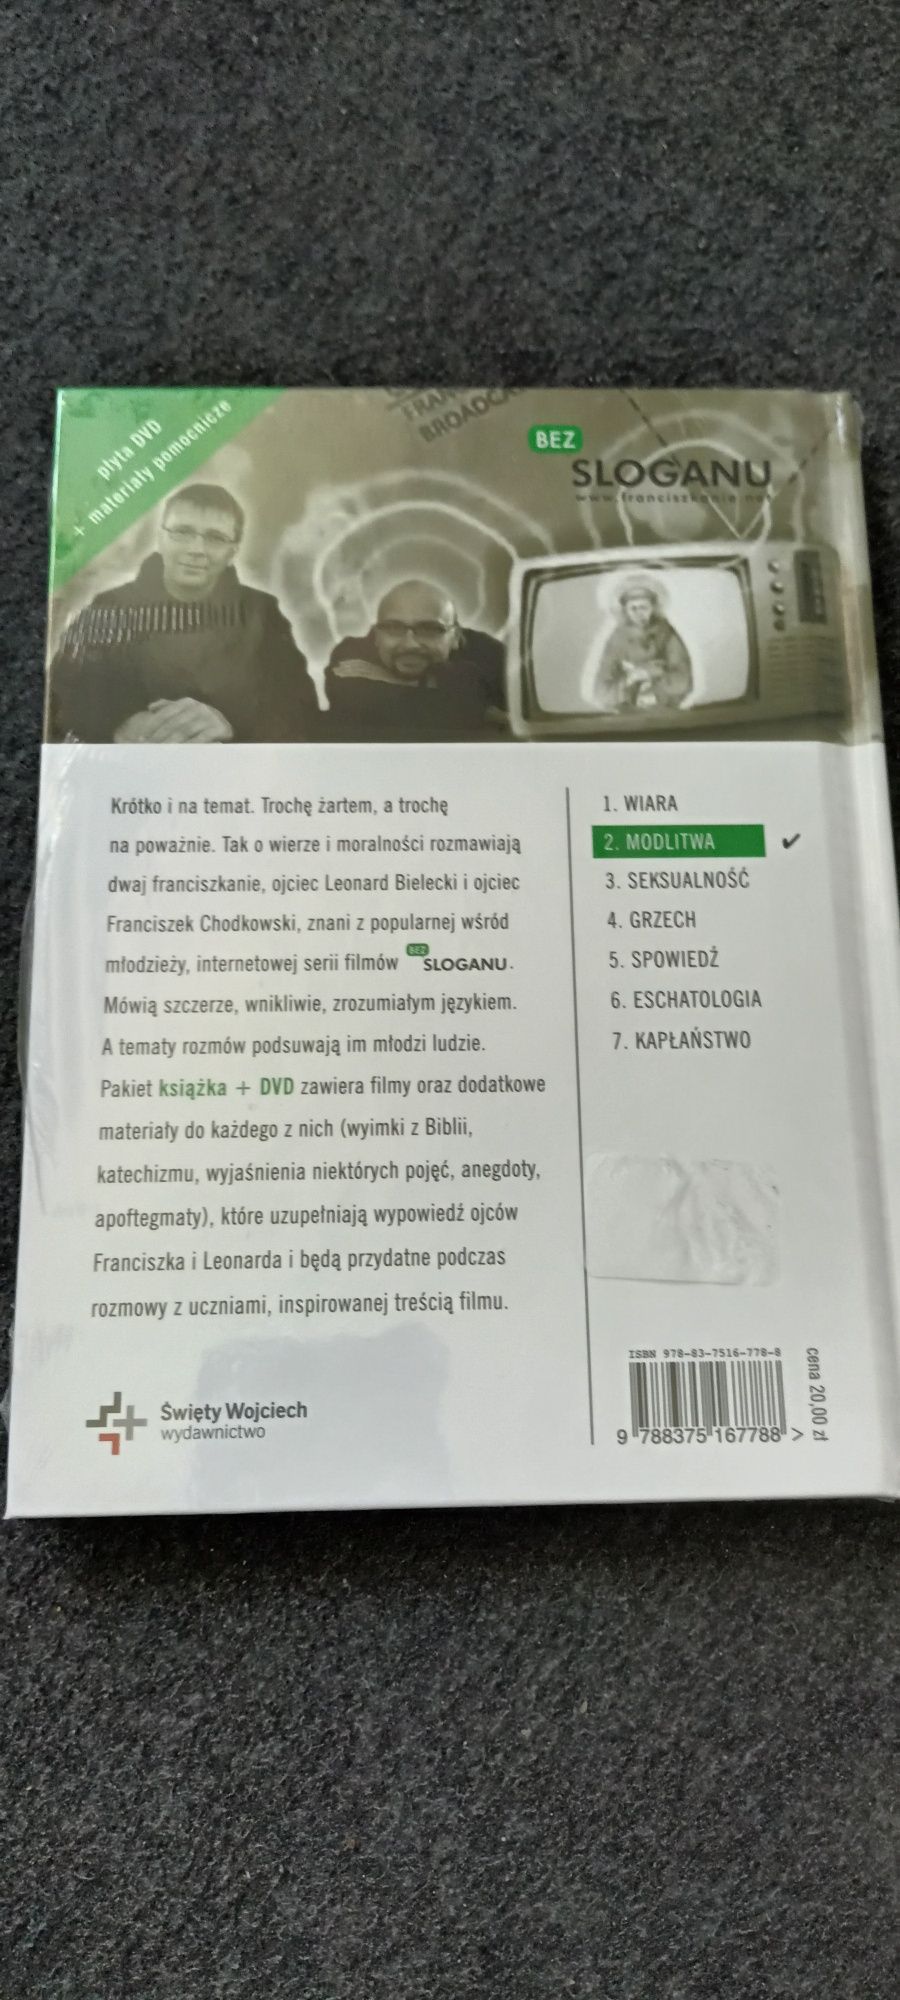 Modlitwa / Bez sloganu / płyta DVD / Franciszkanie